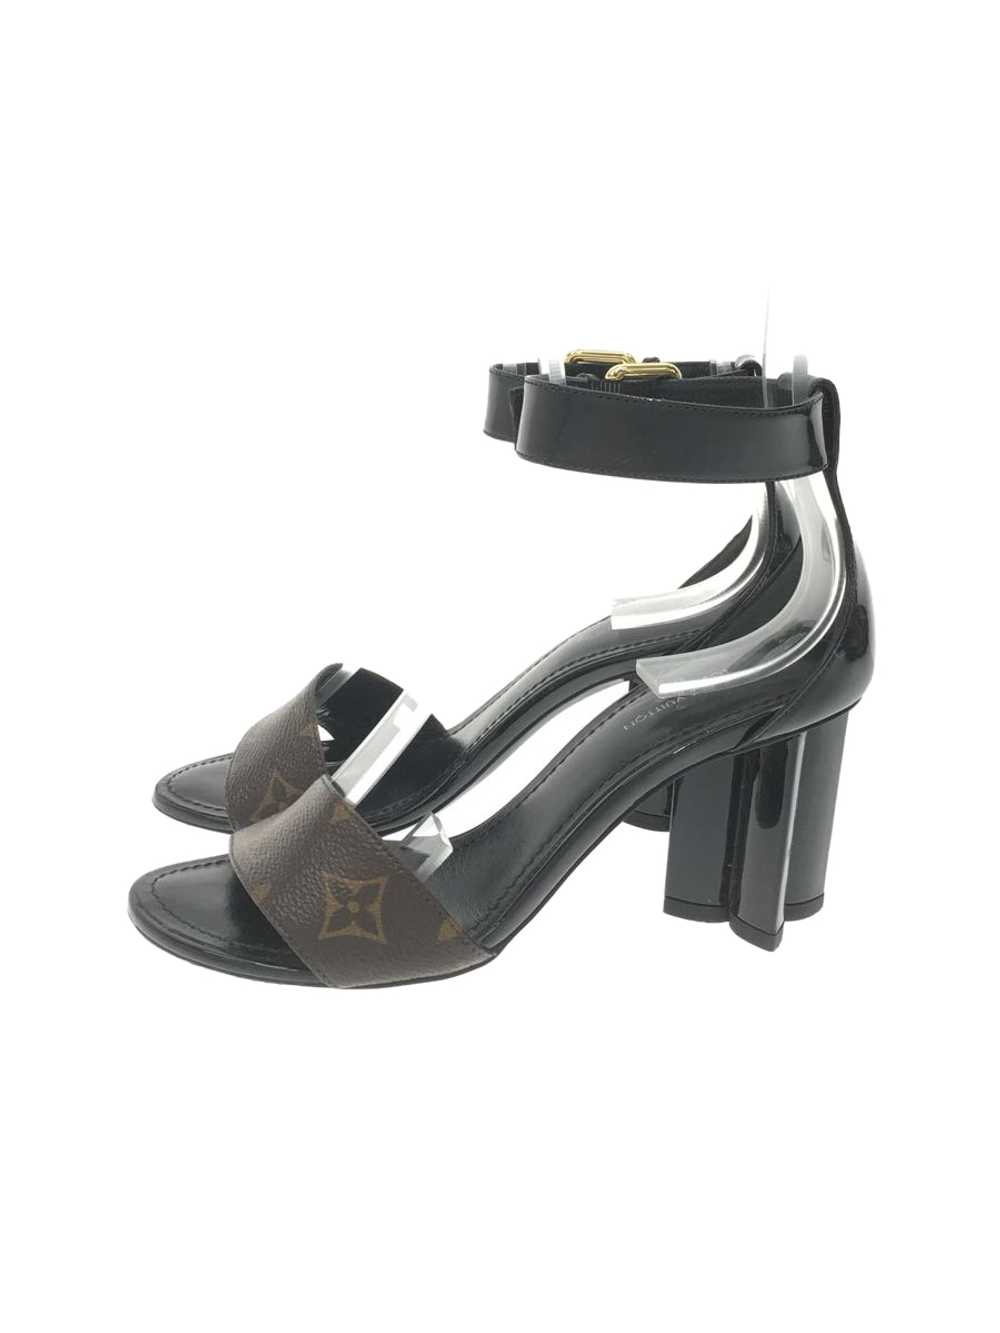 Louis Vuitton Sandals/34.5/Blk/Silhouette Line/Mo… - image 1